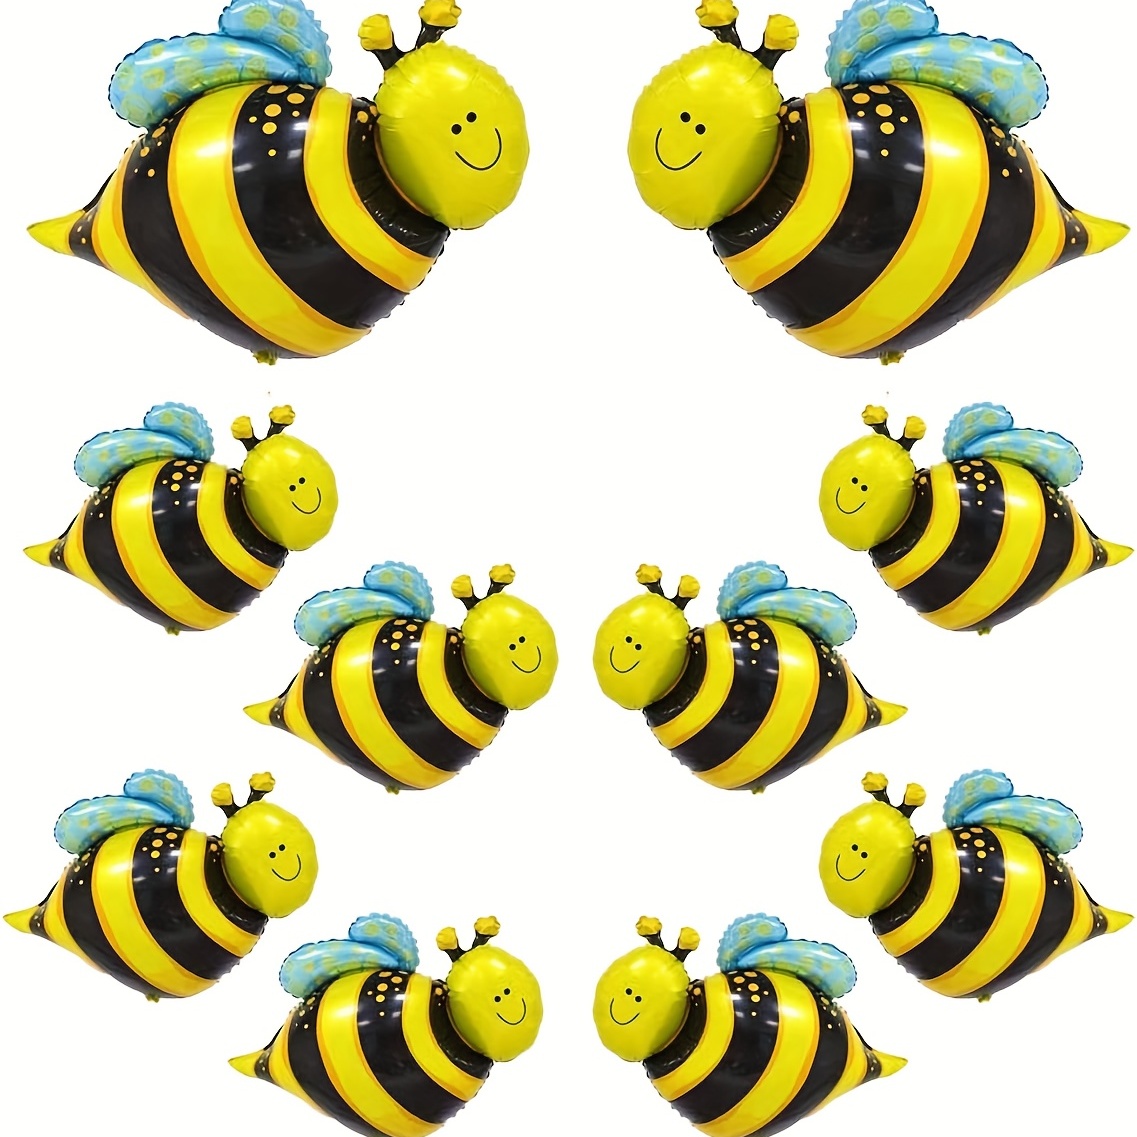 Grands ballons gonflables de couleur or et jaune pour enfant, décoration de  fête préChristophe, motif abeilles